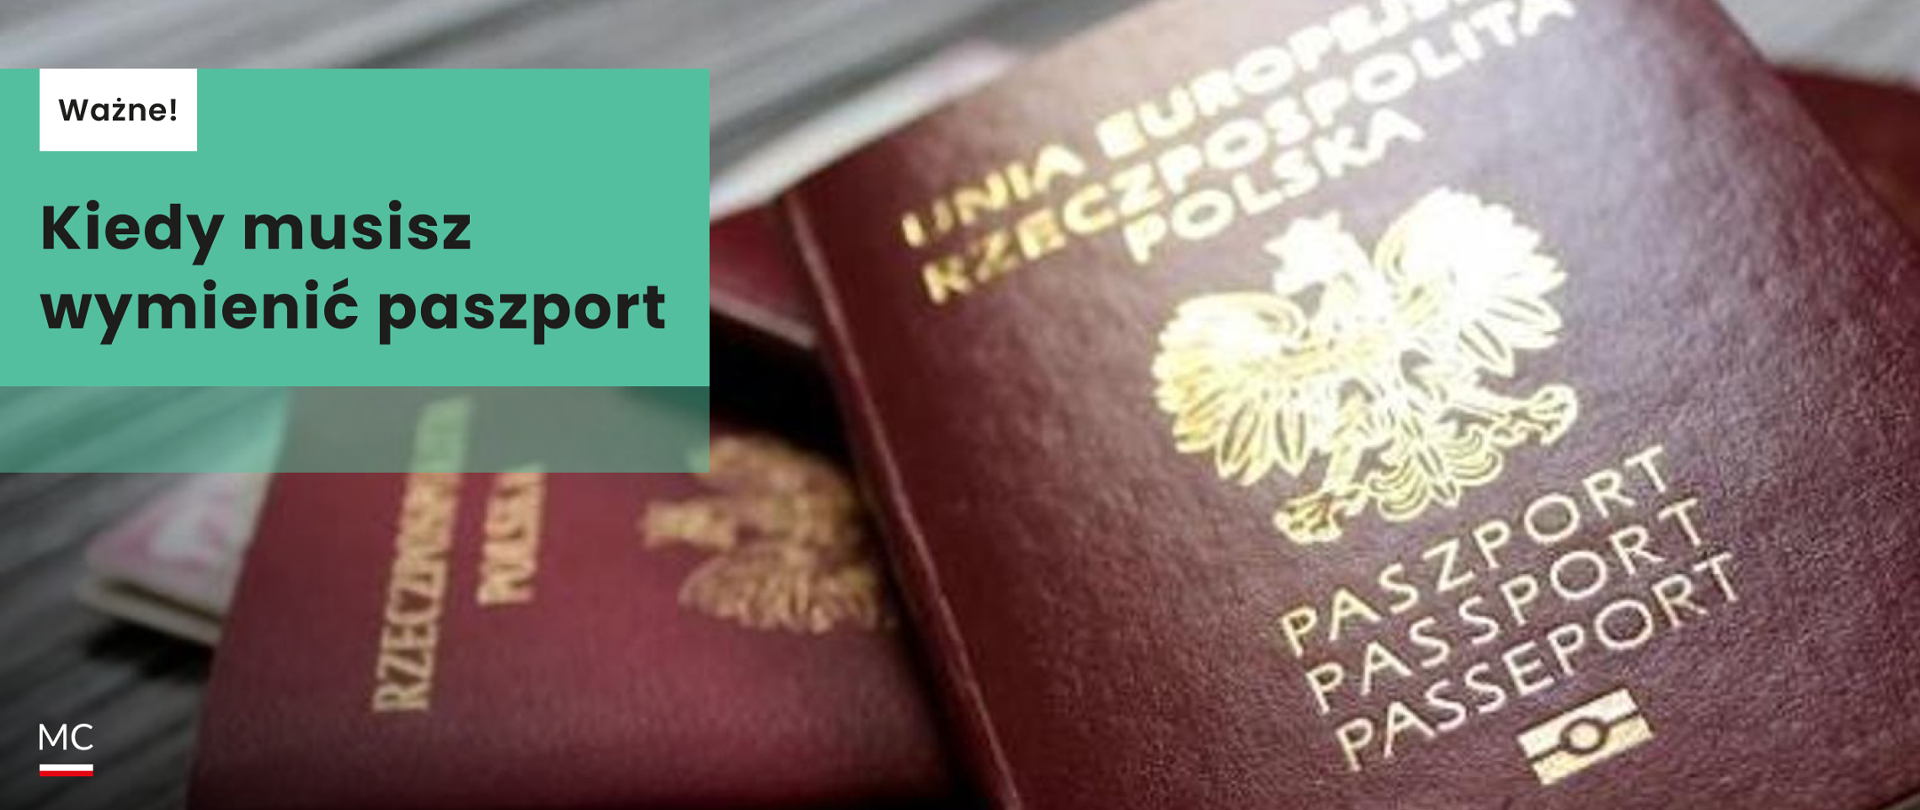 Kiedy musisz wymienić paszport_1